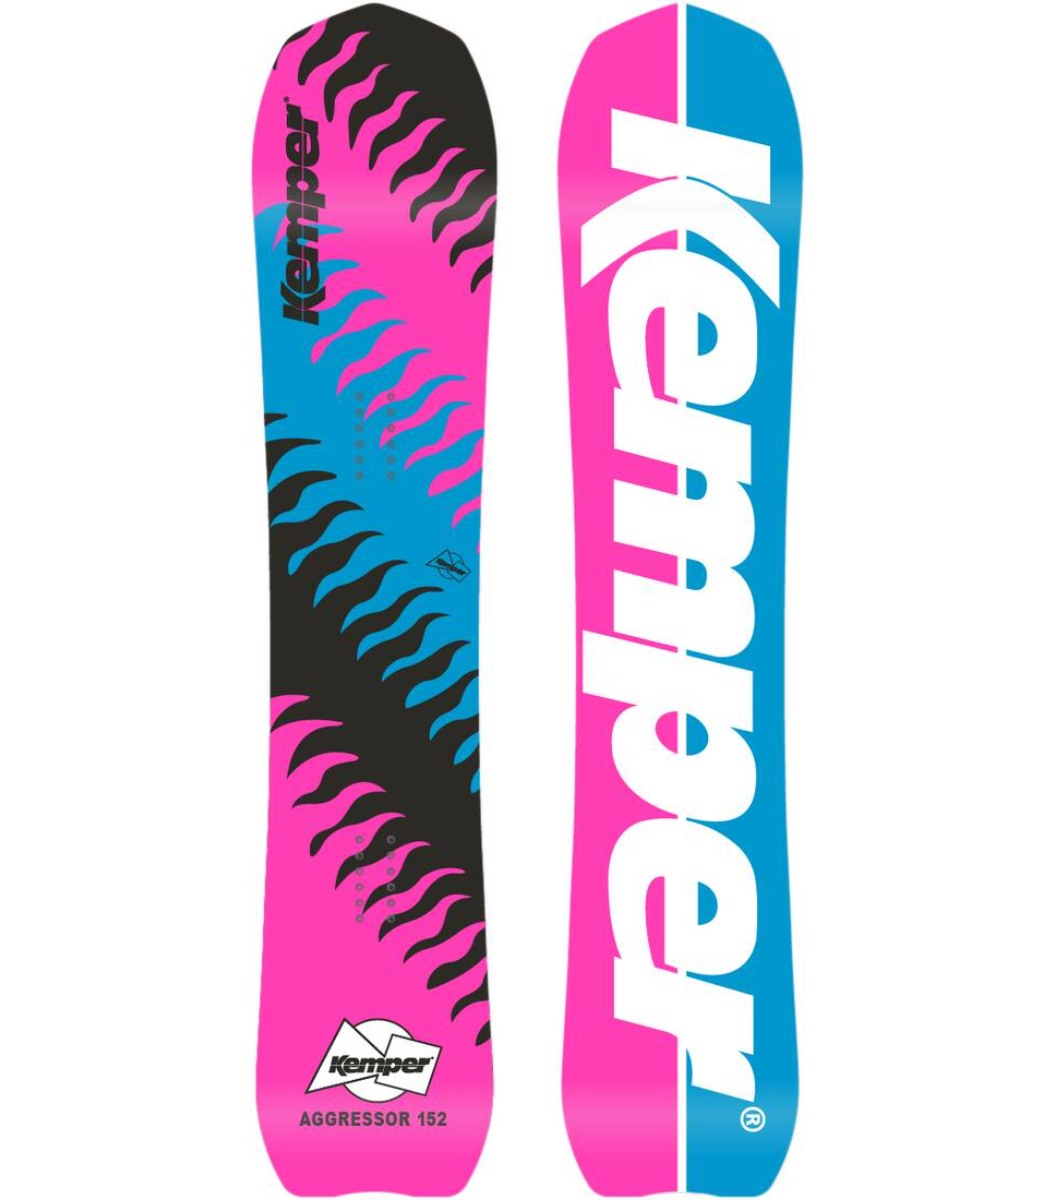 Kemper Aggressor 1989/90 Pink Snowboard - 157 cm